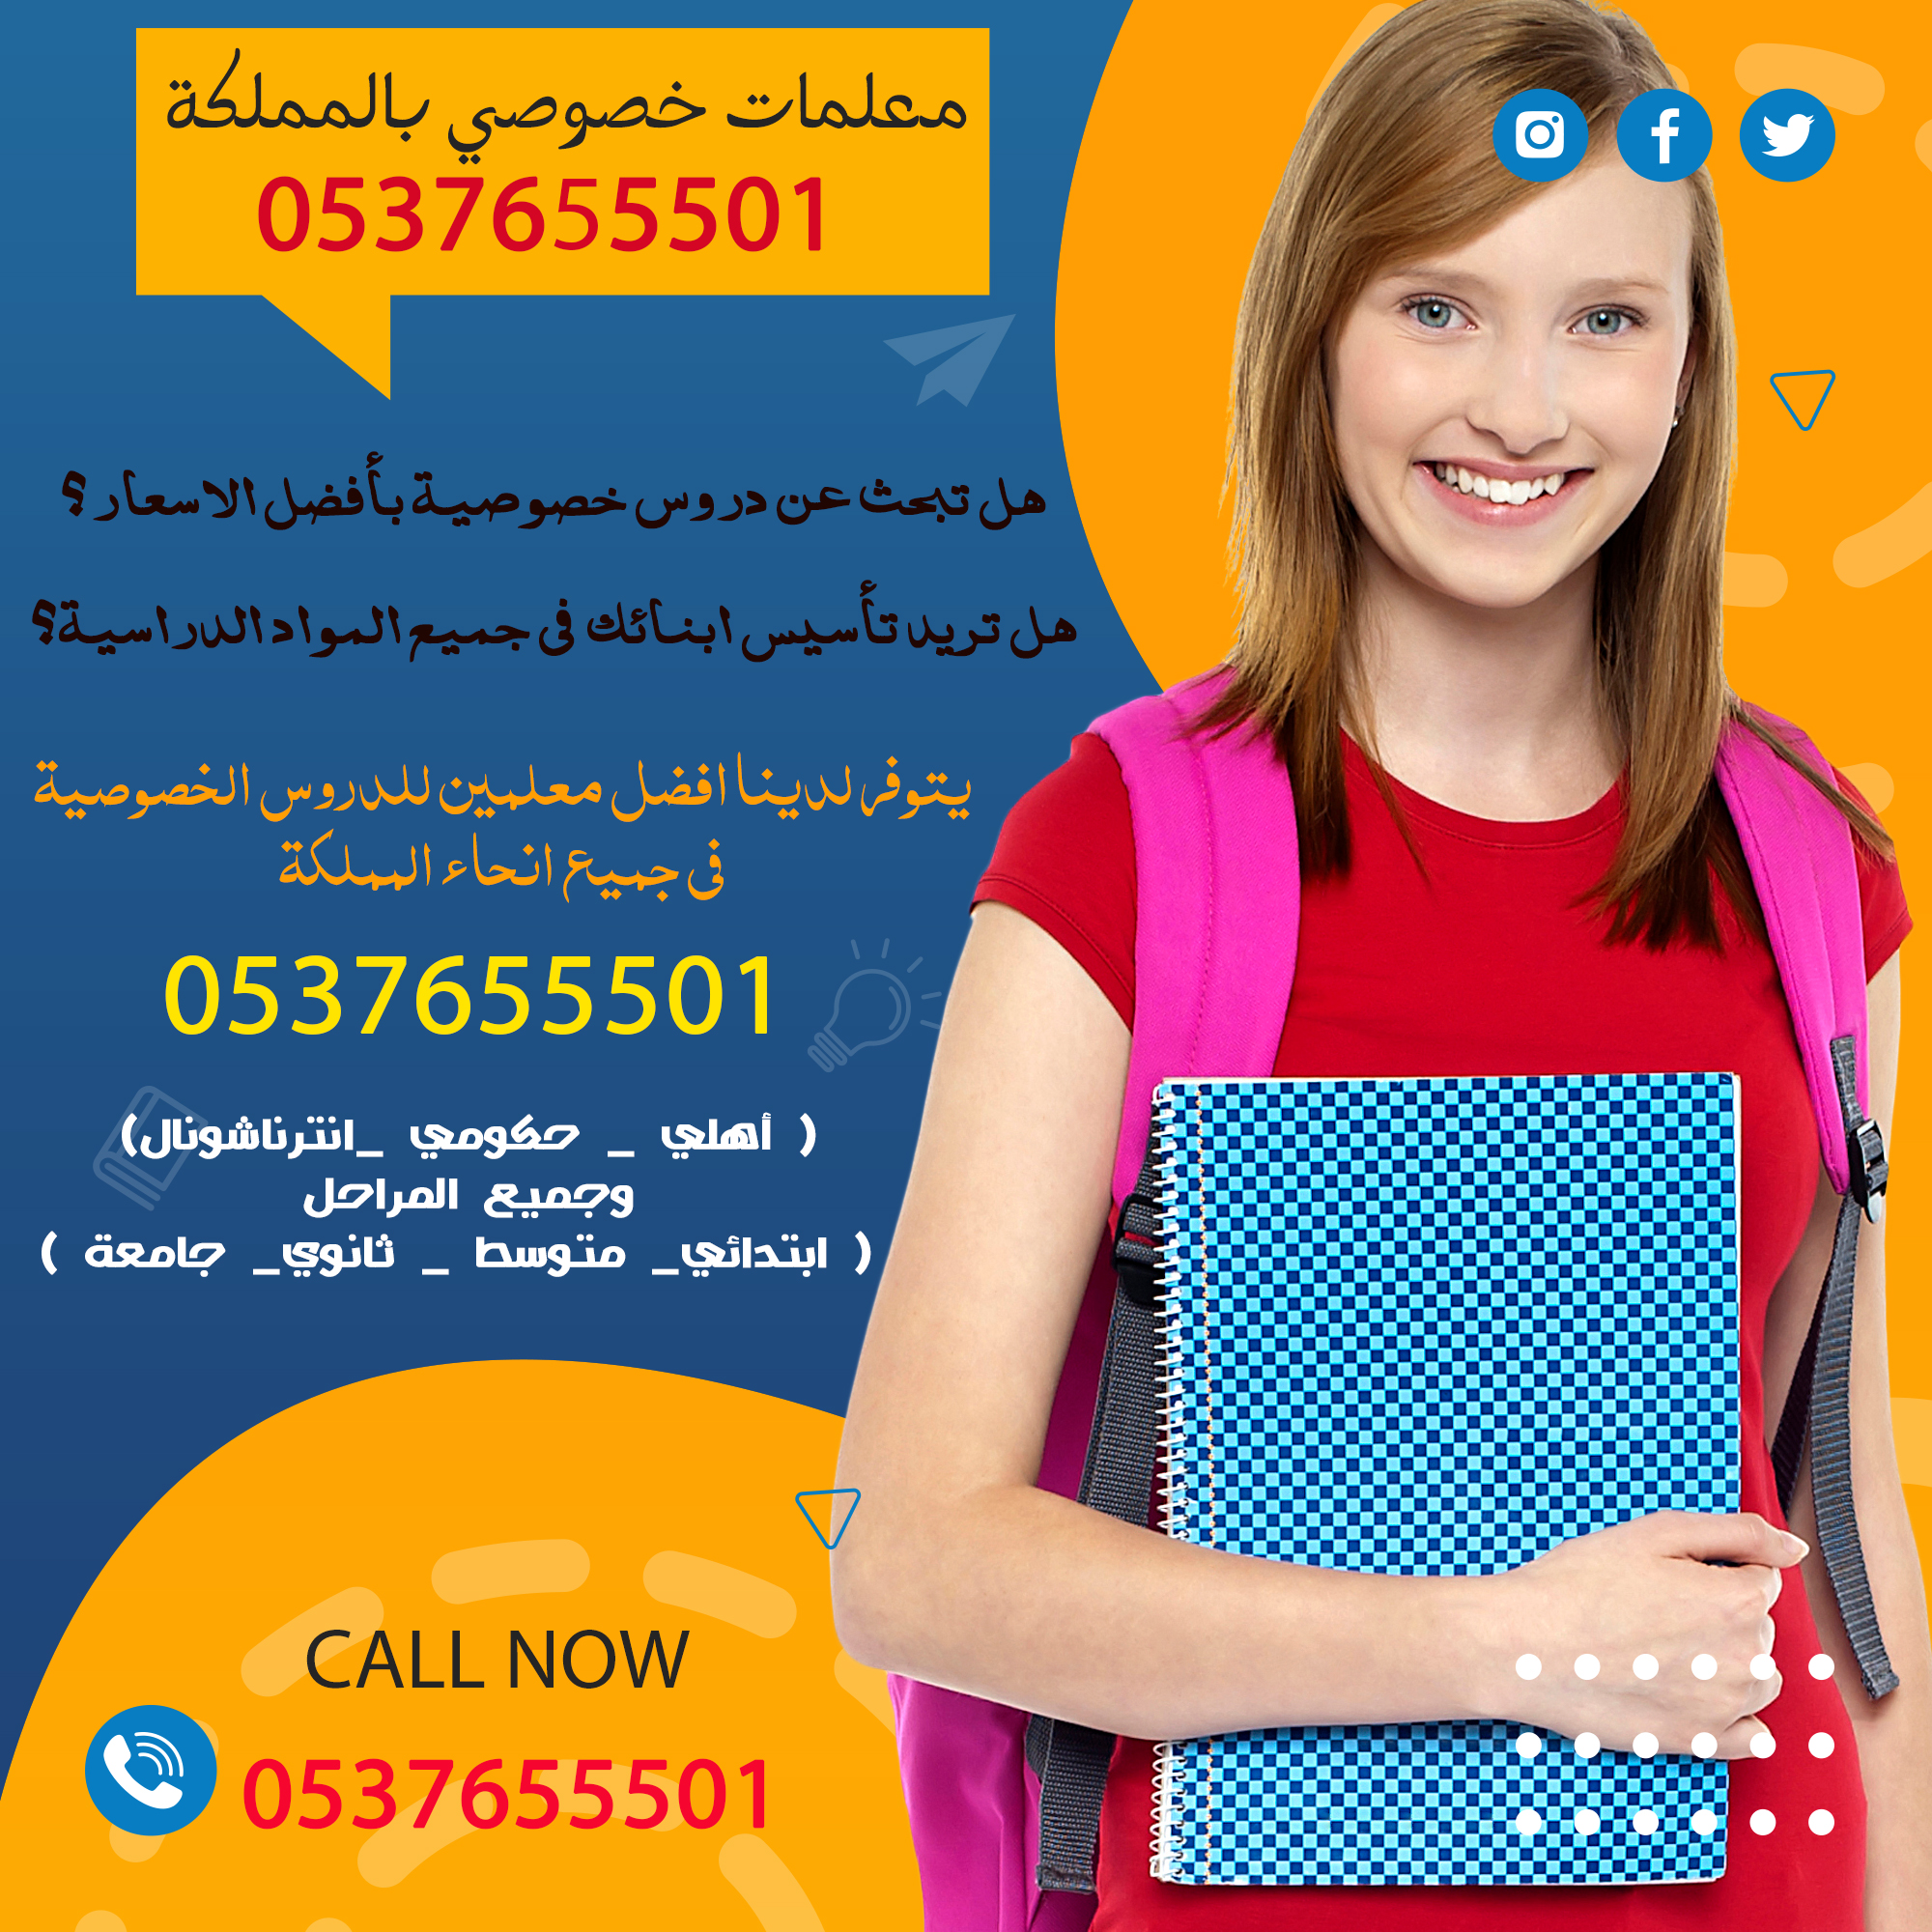 مدرسين ومدرسات خصوصي في جميع المواد لجميع المراحل 0537655501 الرياض 167436944635551